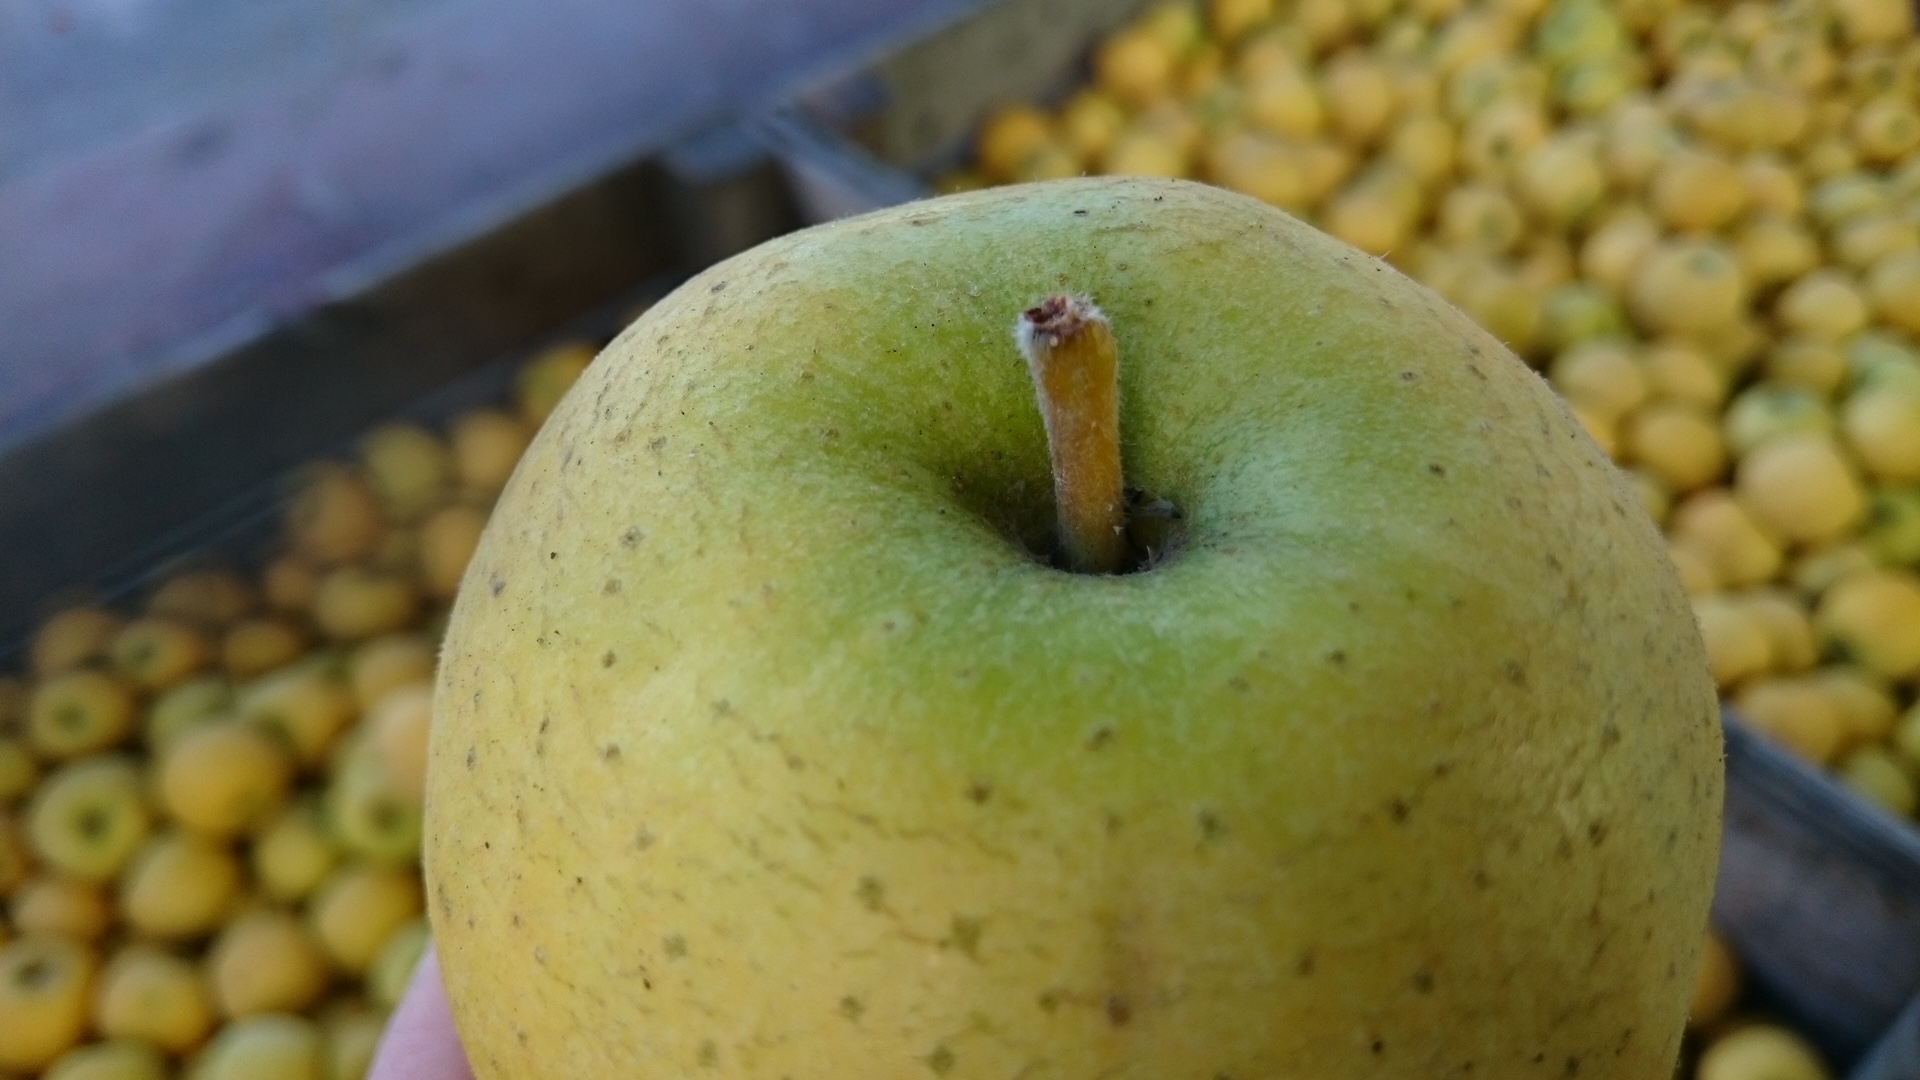 pomme chanteclerc et conservation optimale